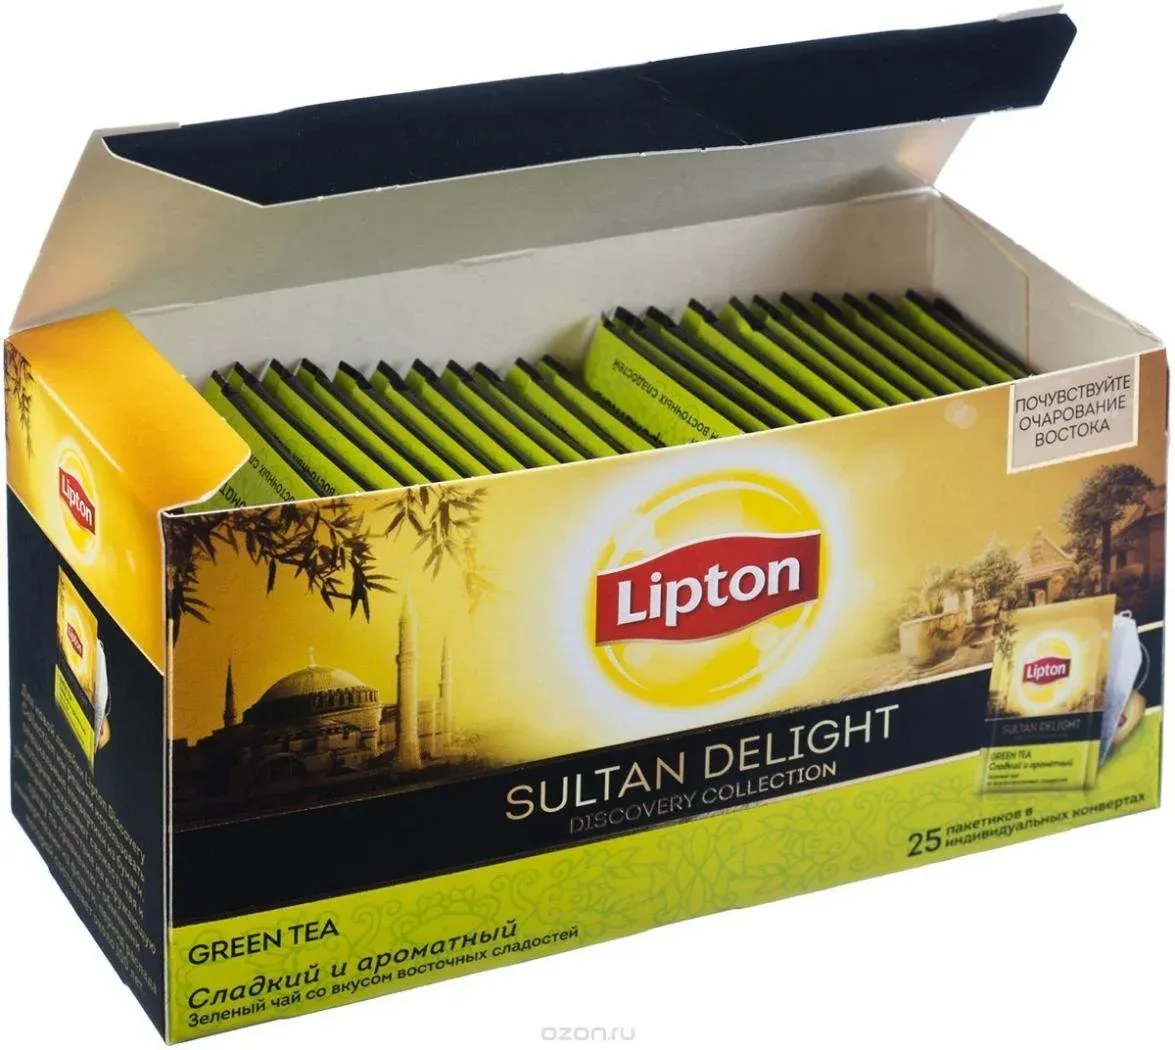 Чай в пакетах цена. Липтон Sultan Delight. Чай Липтон Sultan Delight. Зелёный чай Липтон в пакетиках. Чайный пакетик Lipton.